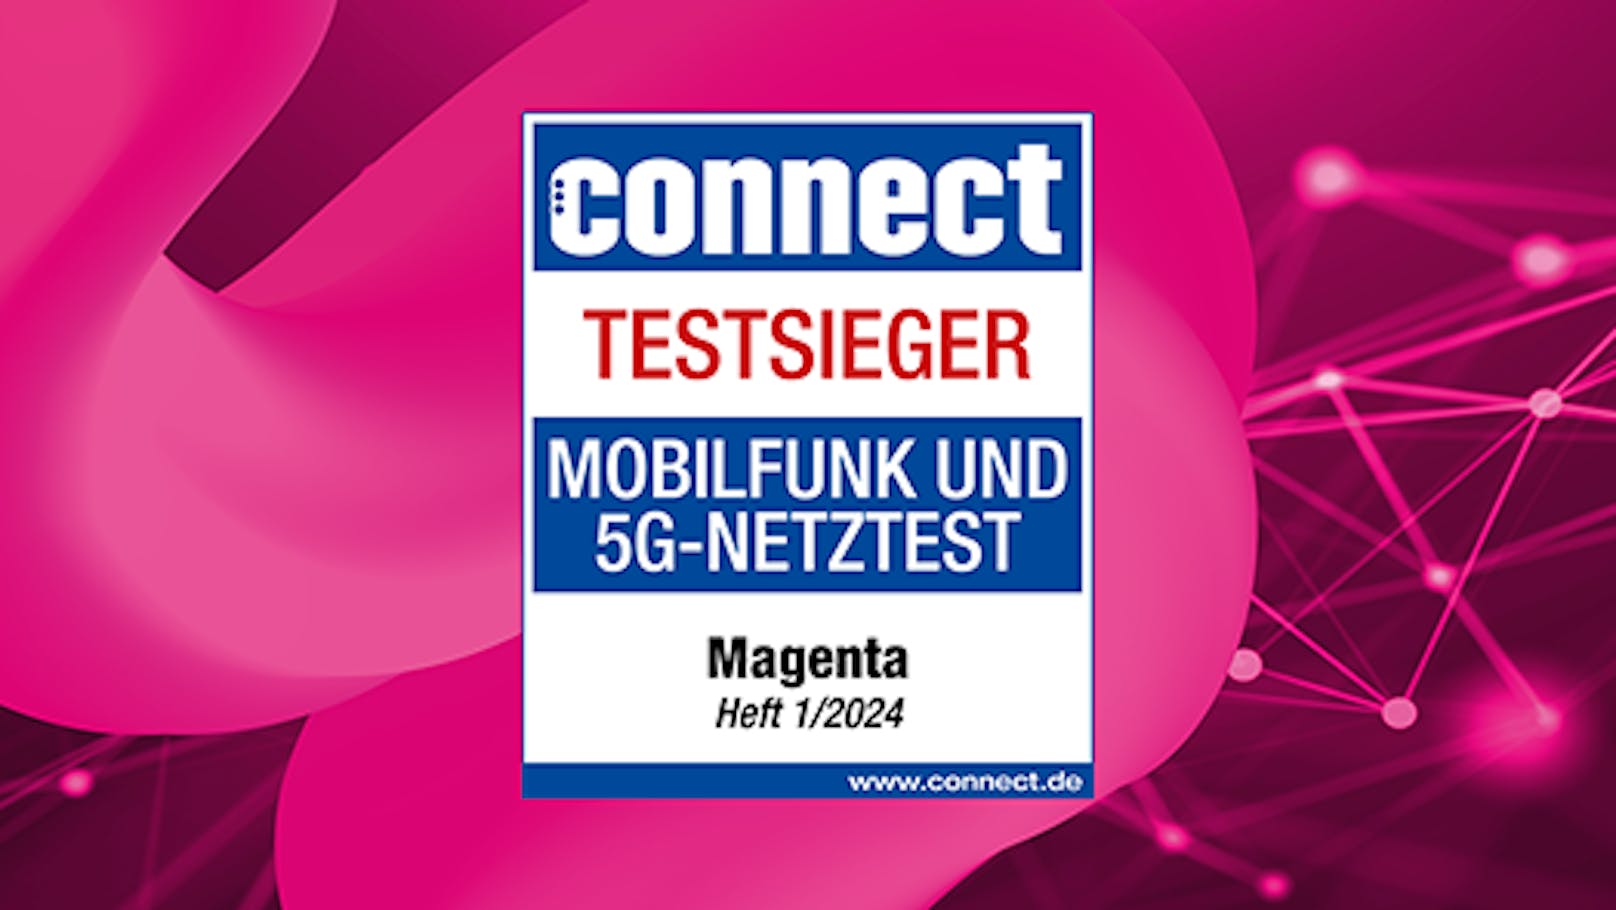 Magenta gewinnt zum sechsten Mal in Folge den connect-Mobilfunknetztest.